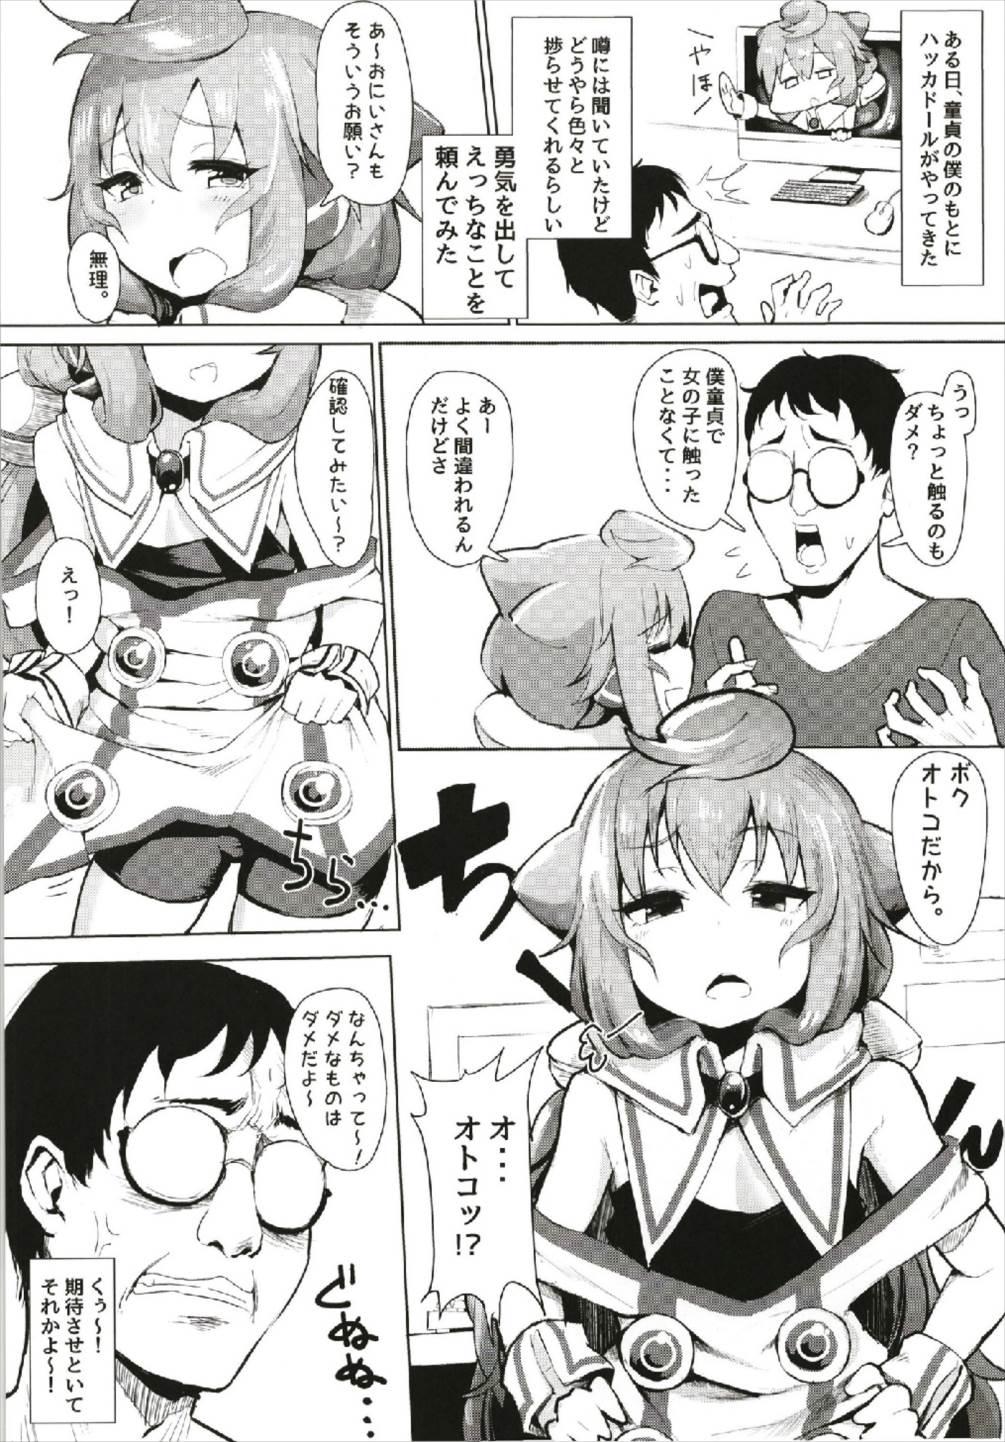 Gaydudes Master, Pakohame Shiyo - Hacka doll Blowjob - Page 4